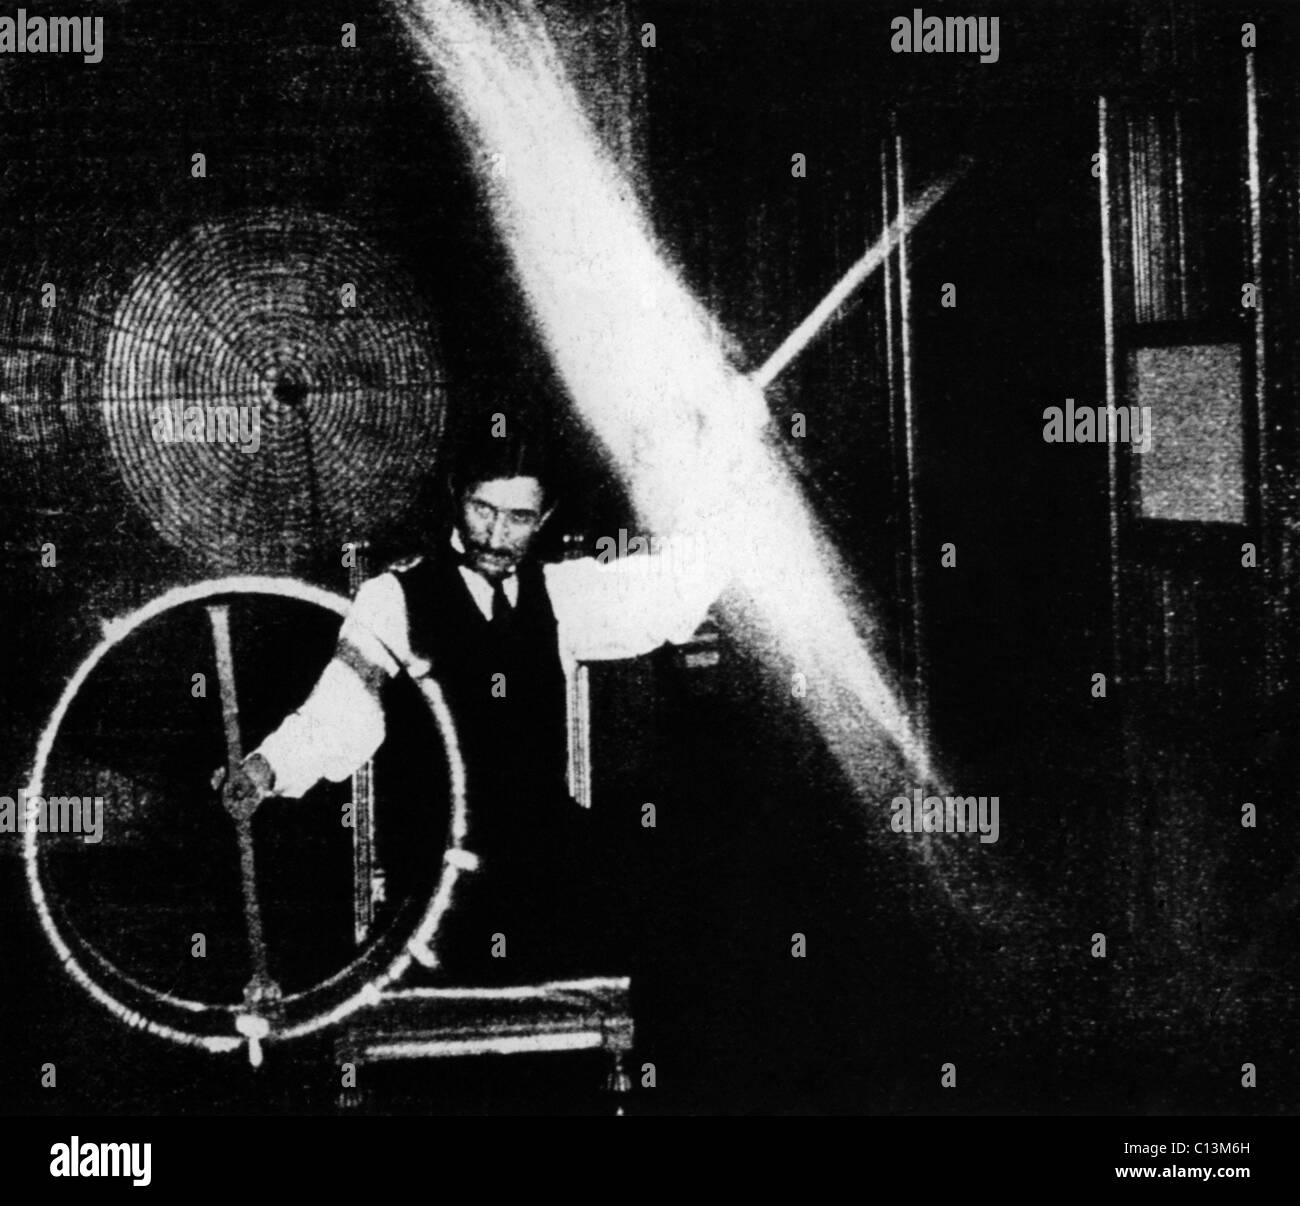 Nikola Tesla 1856-1943 durchgeführt spektakuläre Demonstrationen von Elektrizität. Dieses Bild veröffentlicht in ELECTRICAL REVIEW 1899 begleitete mit dieser Beschriftung, den Körper des Fahrers in diesem Experiment geladen ist, ein hohes Potenzial durch eine Spule auf die Wellen, die ihm von einem fernen Oszillator übermittelt. Stockfoto